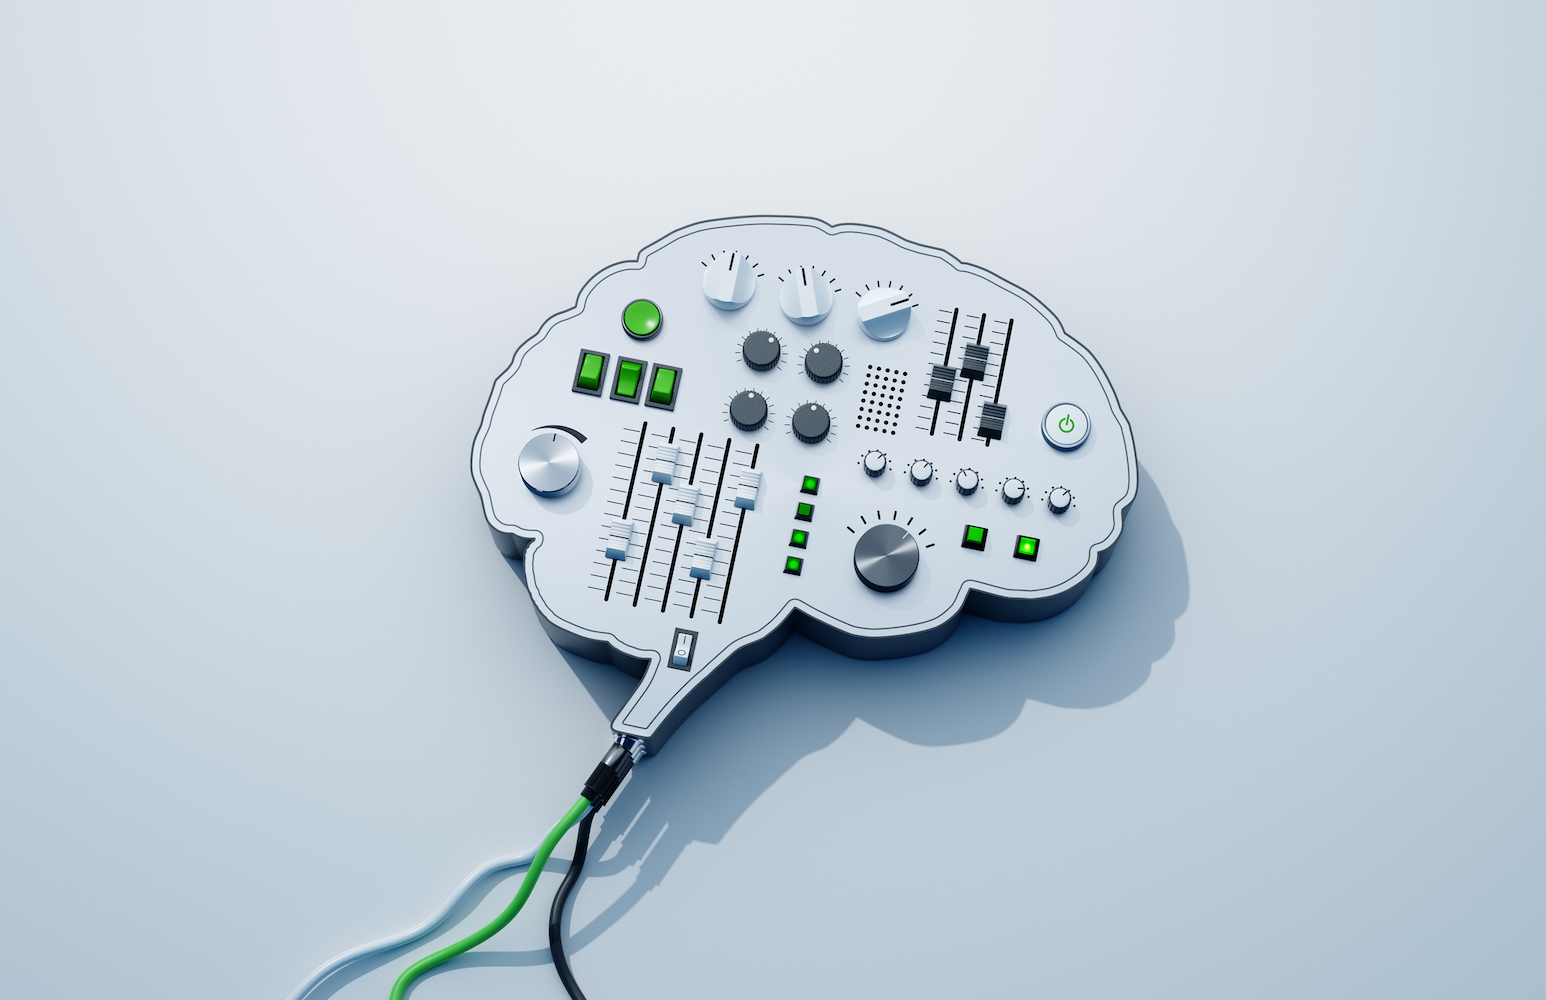 Imagen generada digitalmente de una consola con forma de cerebro con botones y perillas.